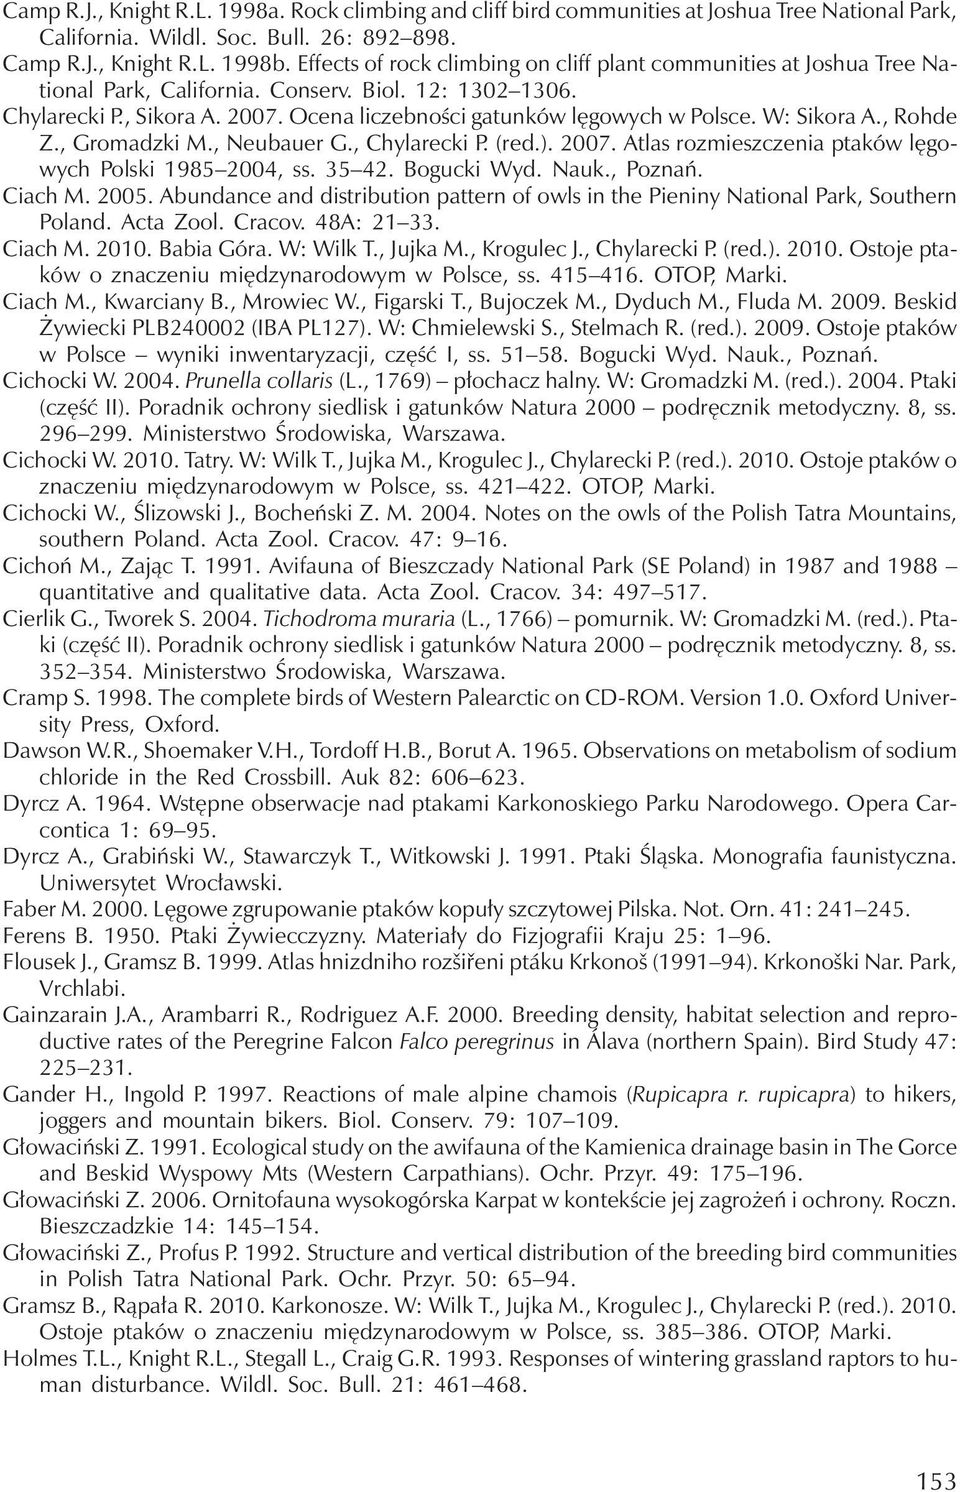 W: Sikora A., Rohde Z., Gromadzki M., Neubauer G., Chylarecki P. (red.). 2007. Atlas rozmieszczenia ptaków lęgowych Polski 1985 2004, ss. 35 42. Bogucki Wyd. Nauk., Poznań. Ciach M. 2005.